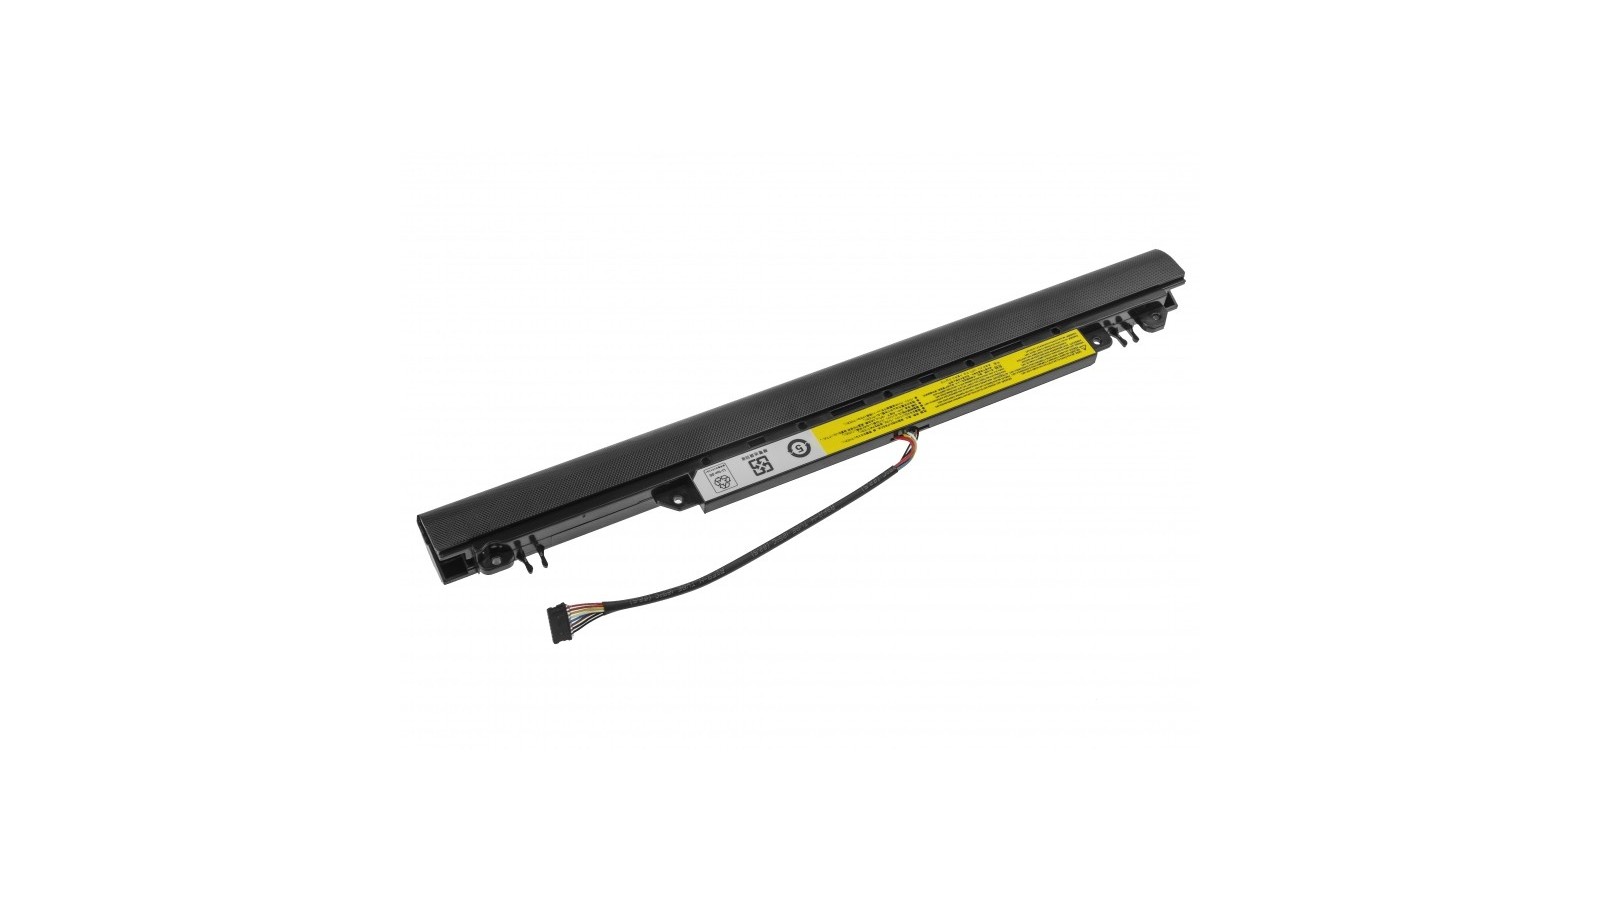 Batteria 2600 mAh compatibile con Lenovo IdeaPad 110-14IBR 110-15ACL 110-15IBR 110-15AST